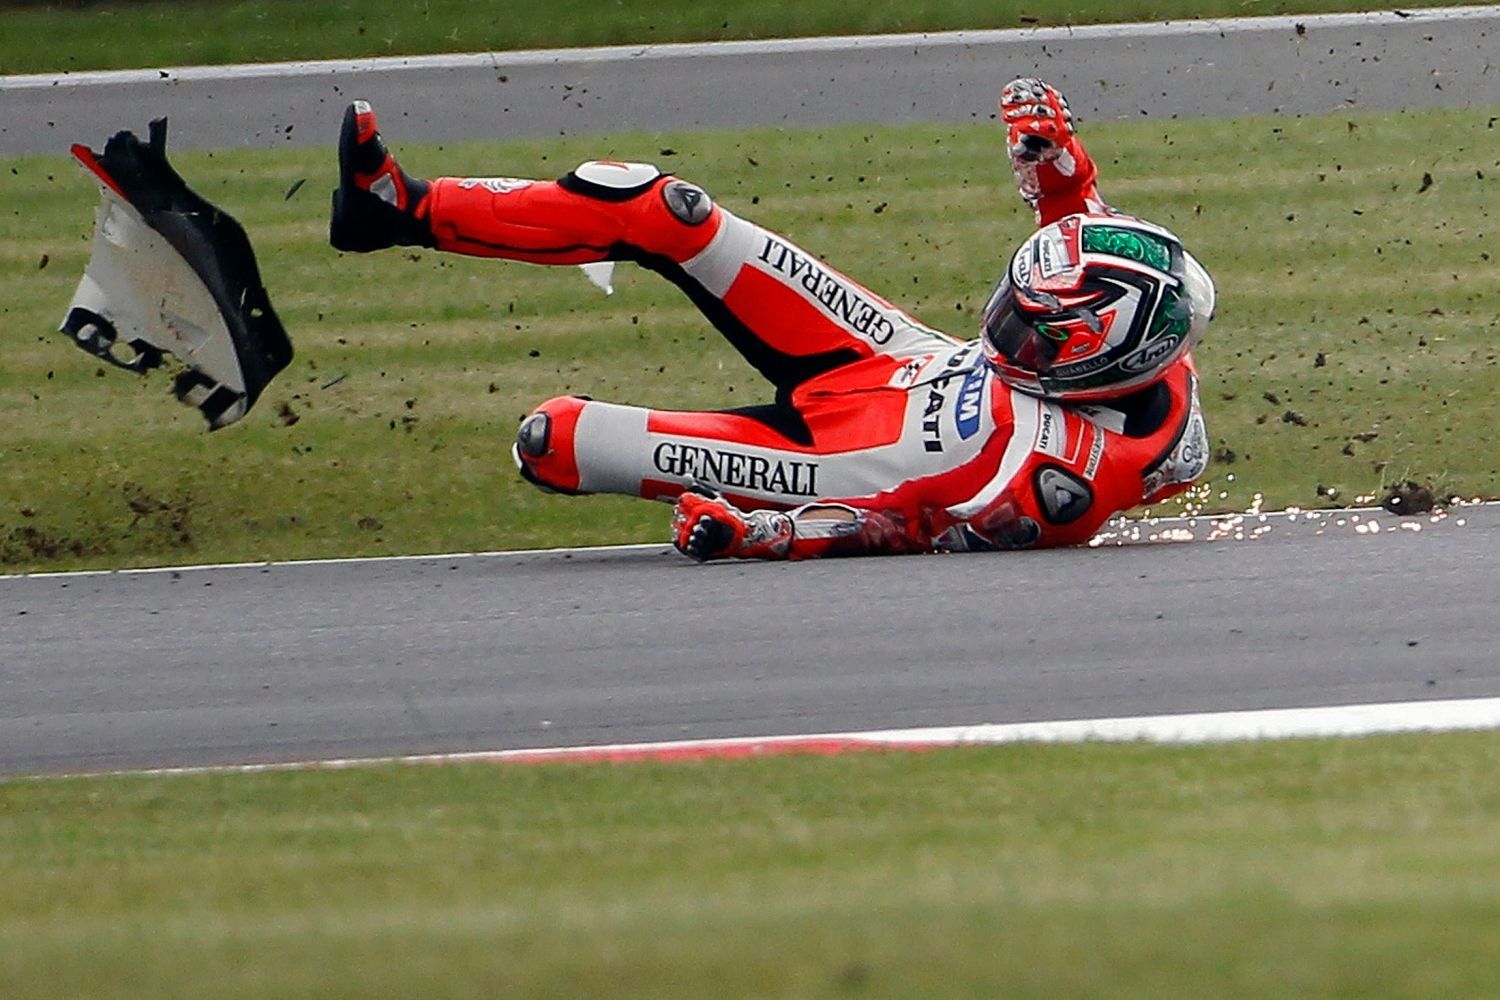 Americký motocyklový jezdec Ducati, Nicky Hayden v kategorii MotoGP na Grand Prix Velké Británie 2012